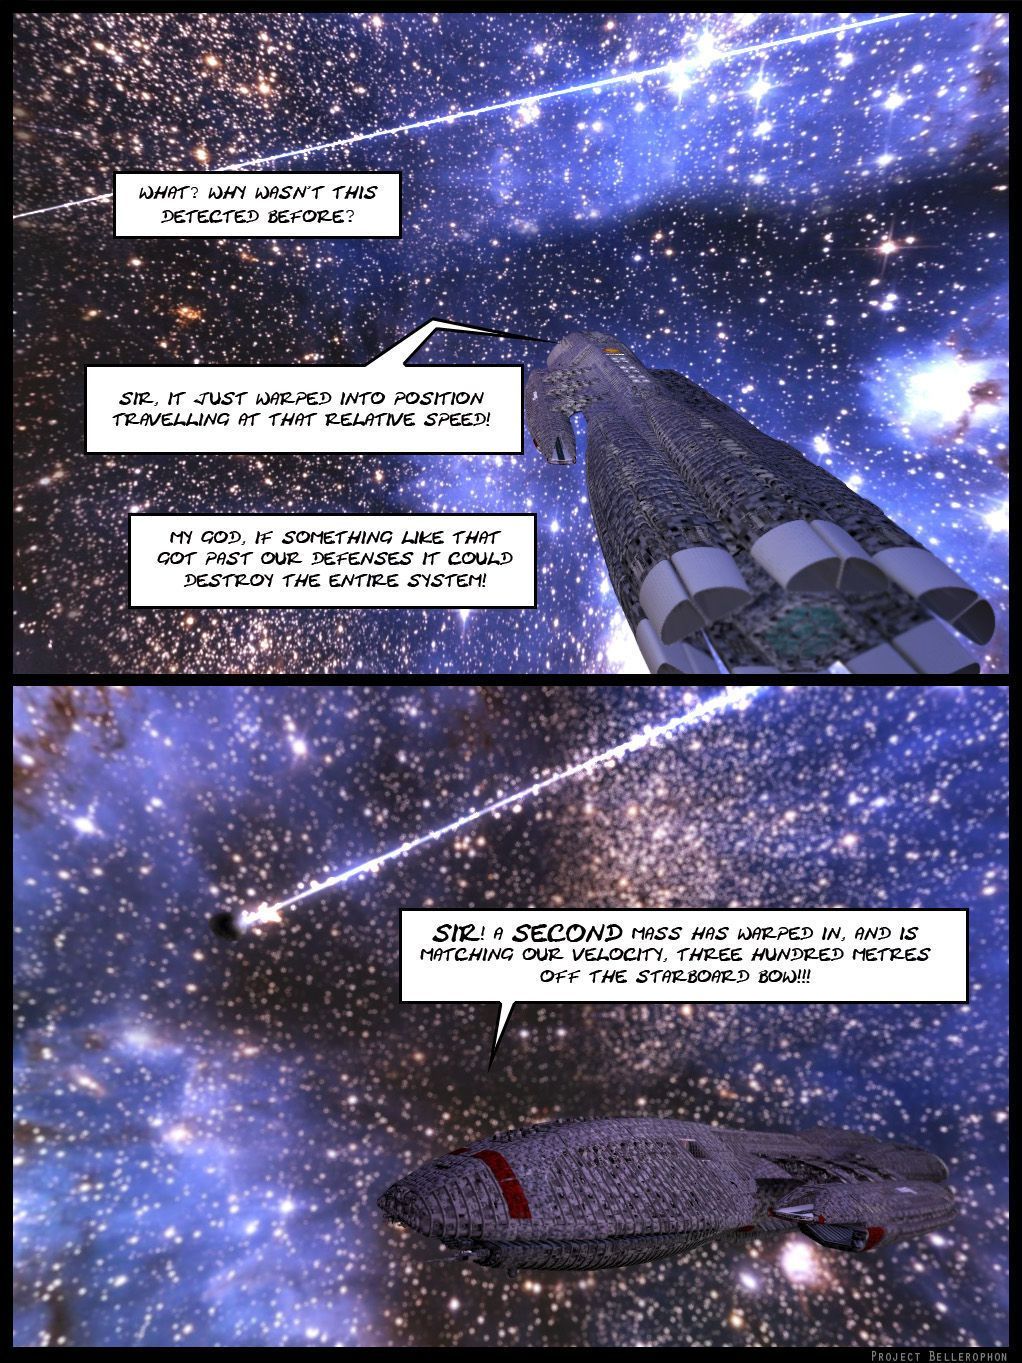 プロジェクト bellerophon コミック 18: 影 - 塵 部分 3